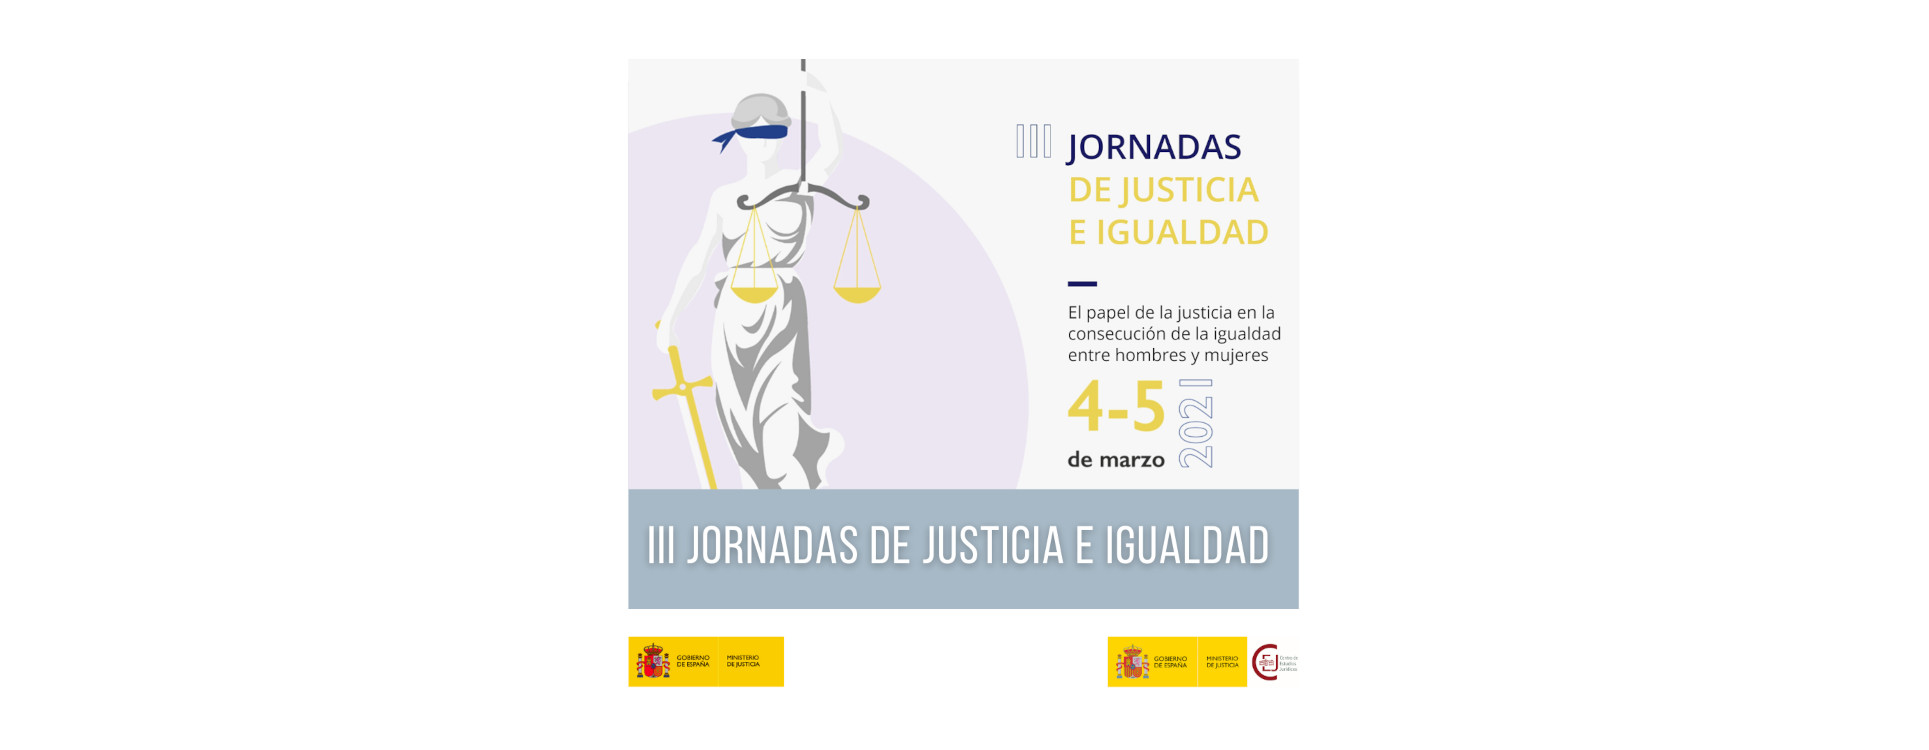 III JORNADAS DE JUSTICIA E IGUALDAD